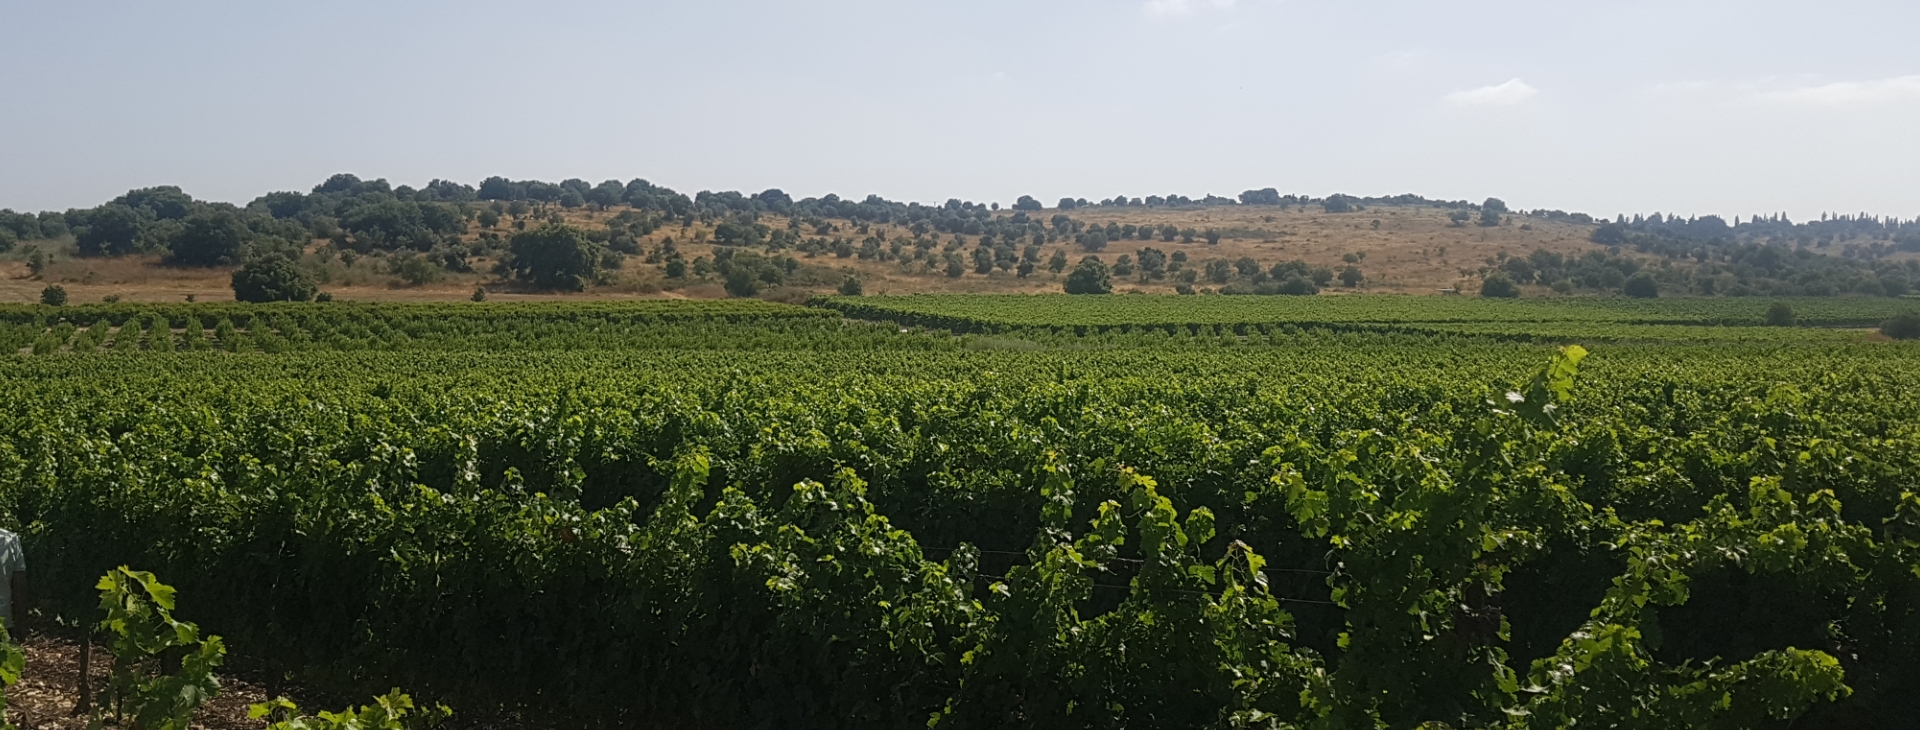 Jerusalem Winery